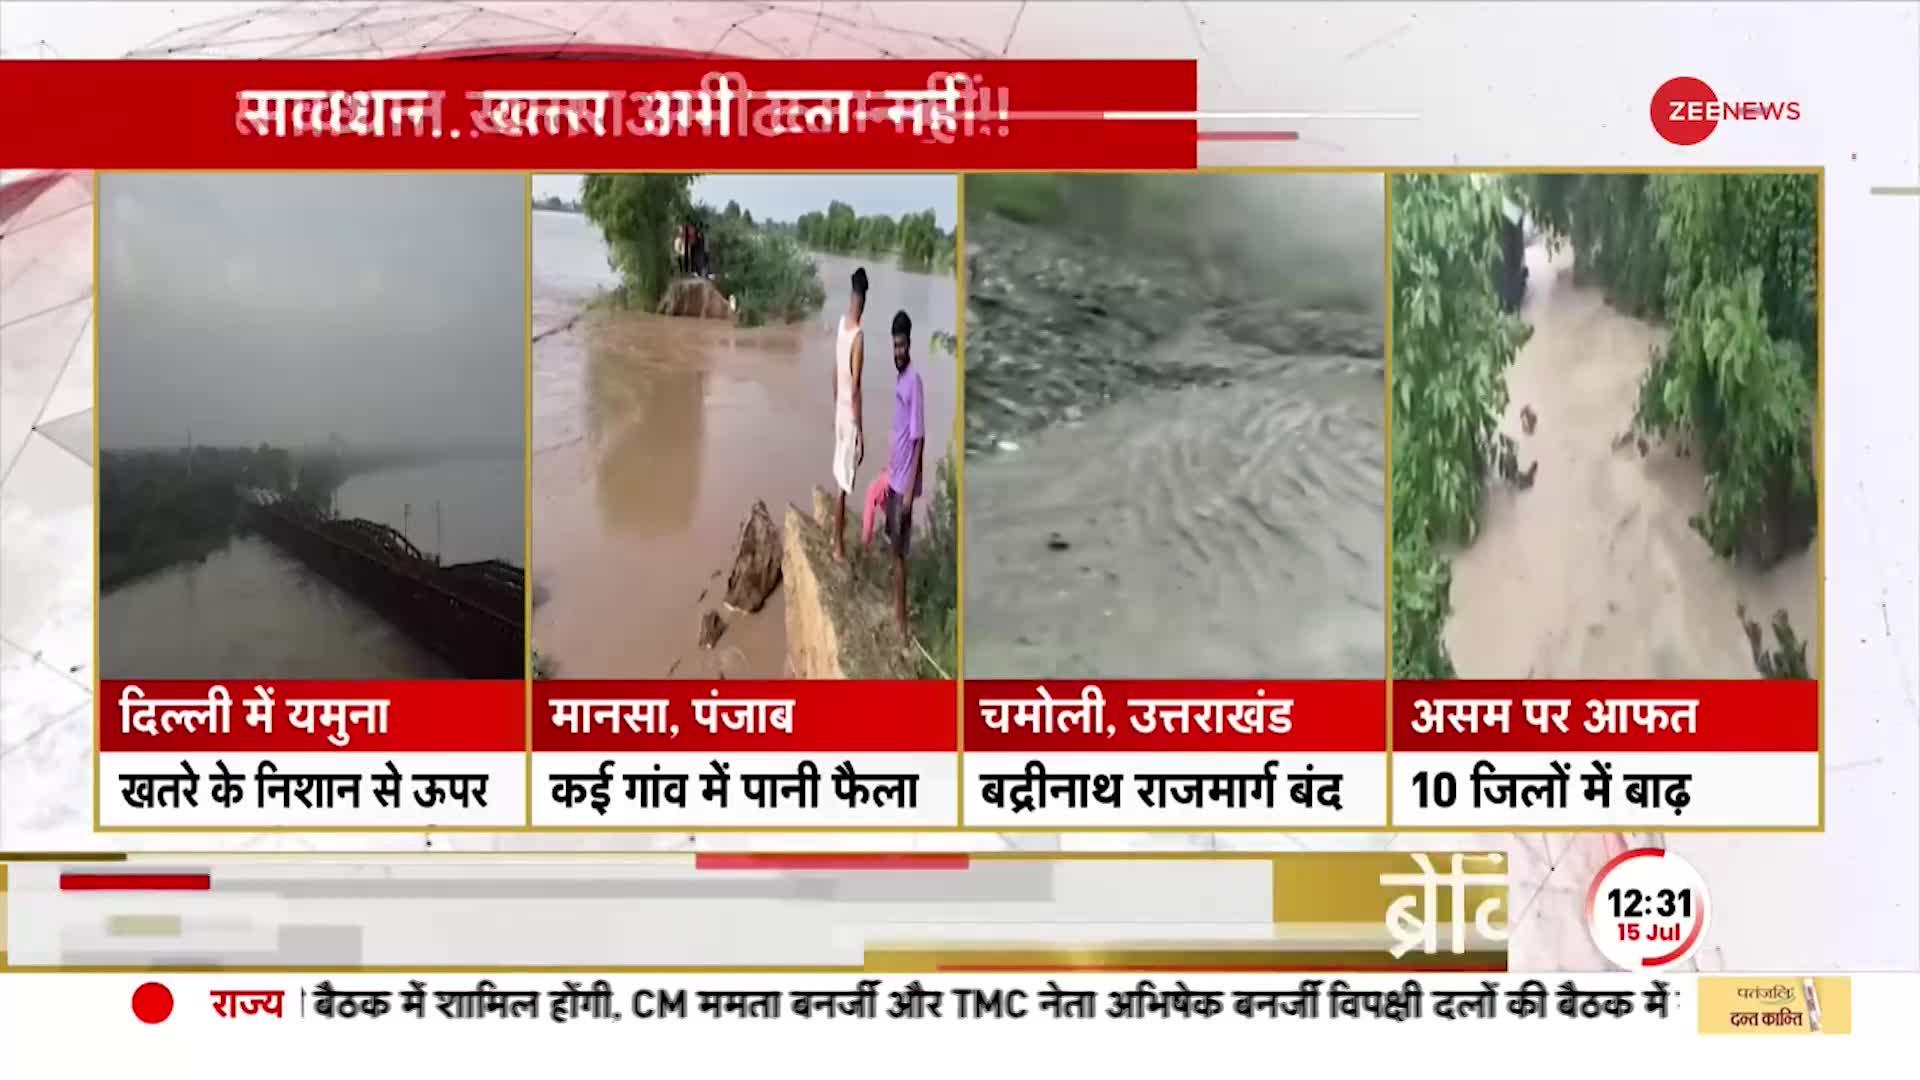 Flood News Update: बाढ़ से लोगो का जीना मुहाल, डूबा आधा हिन्दुस्तान! Breaking News